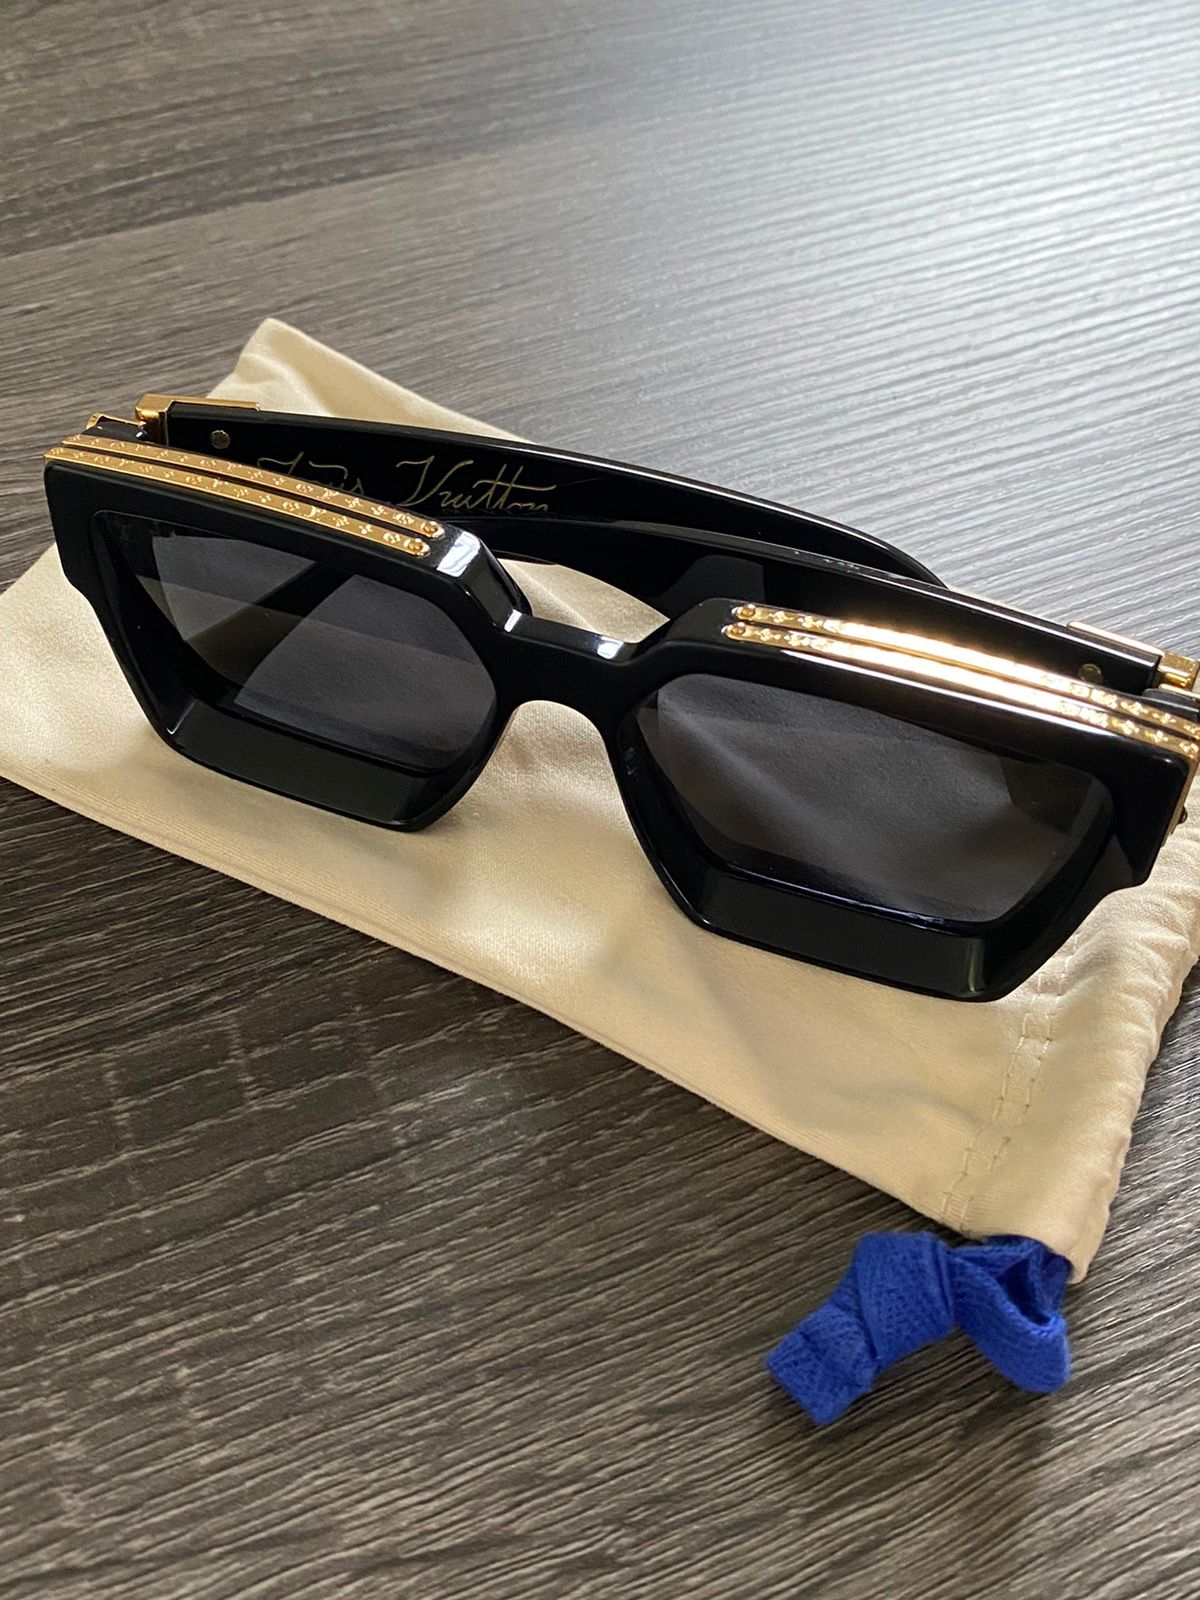 Louis Vuitton 2021 Z1165E LV Sunglasses 1.1Millionaire Monogram